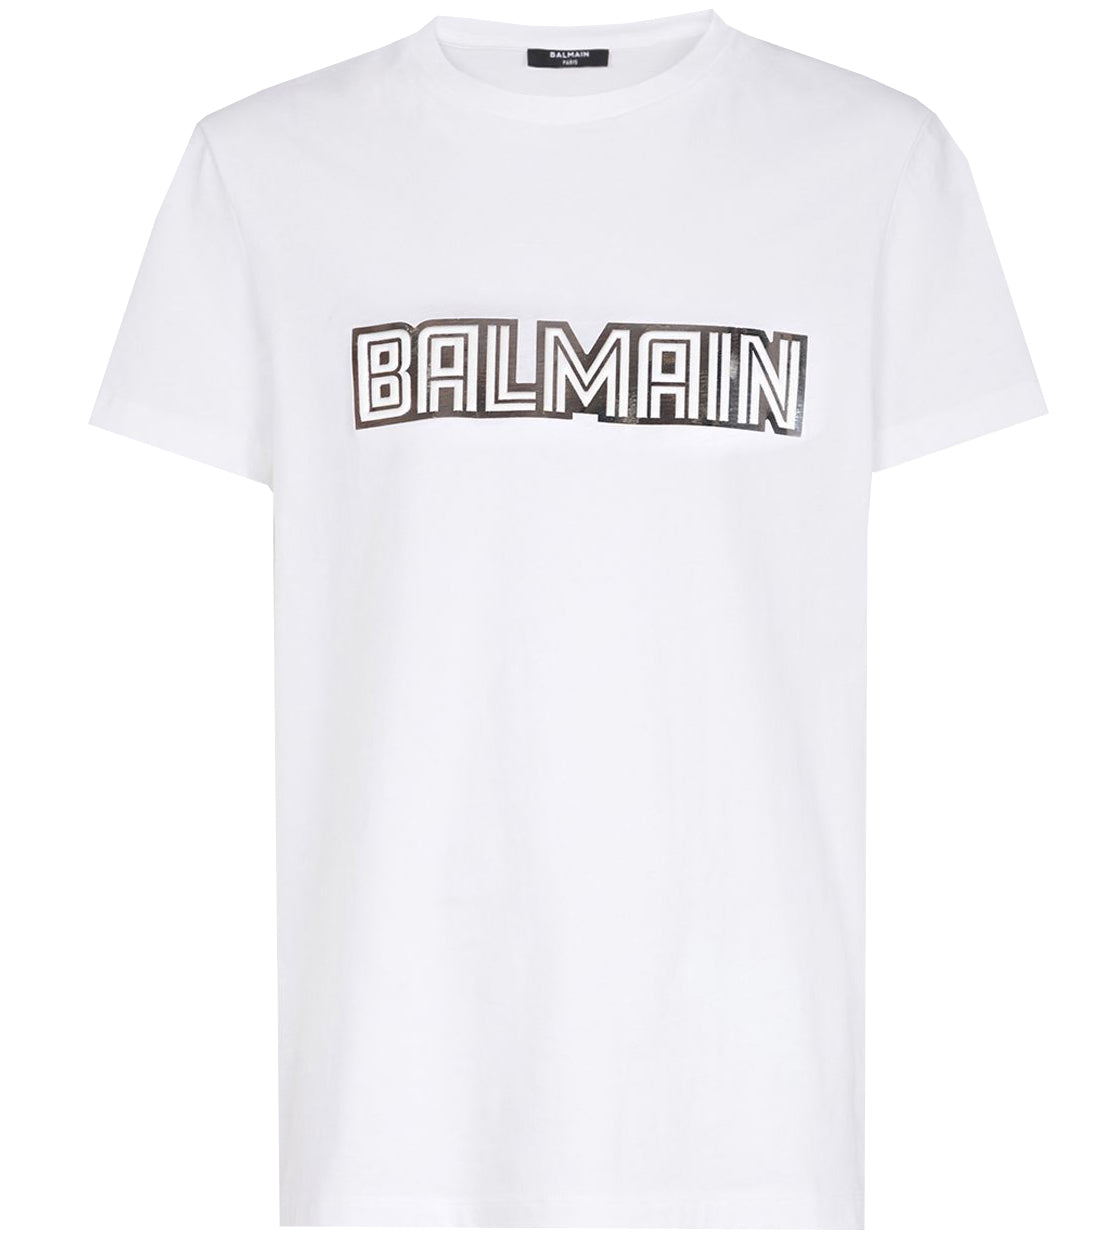 Regan Nødvendig nudler Metallic Balmain Embossed T-Shirt - White & Silver - PureAtlanta.com